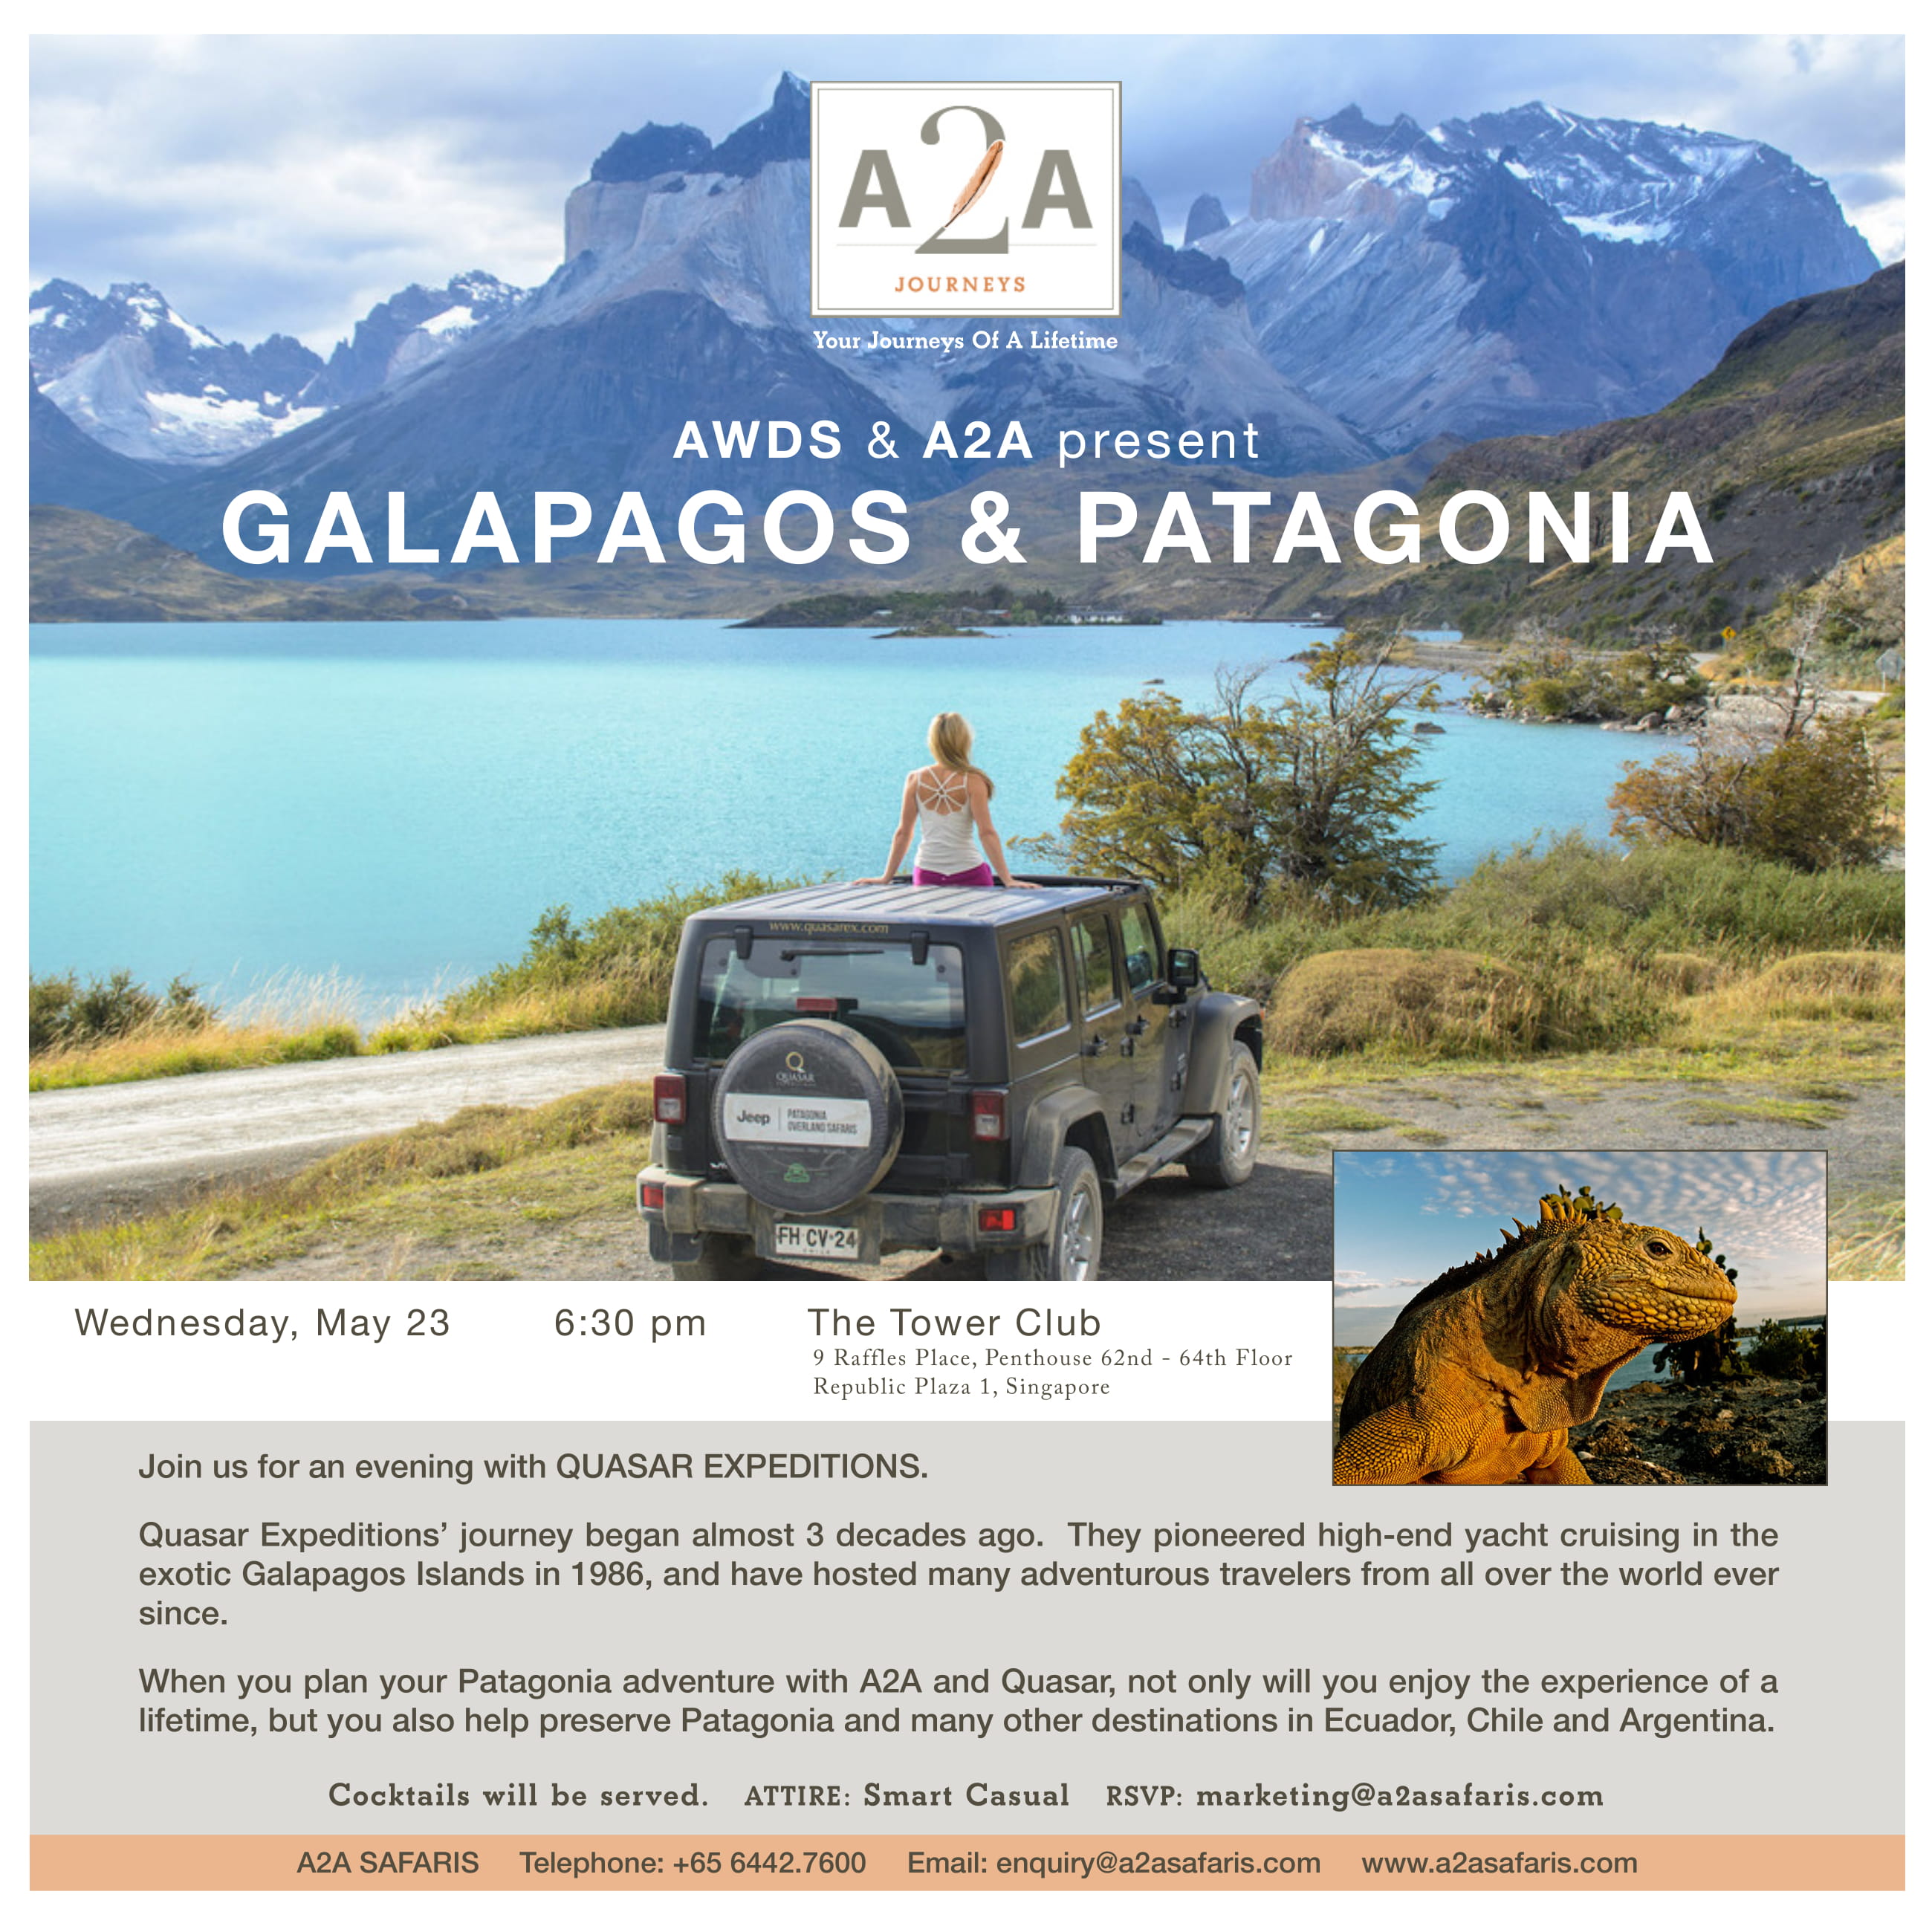 A2A represents Galapagos & Patagonia